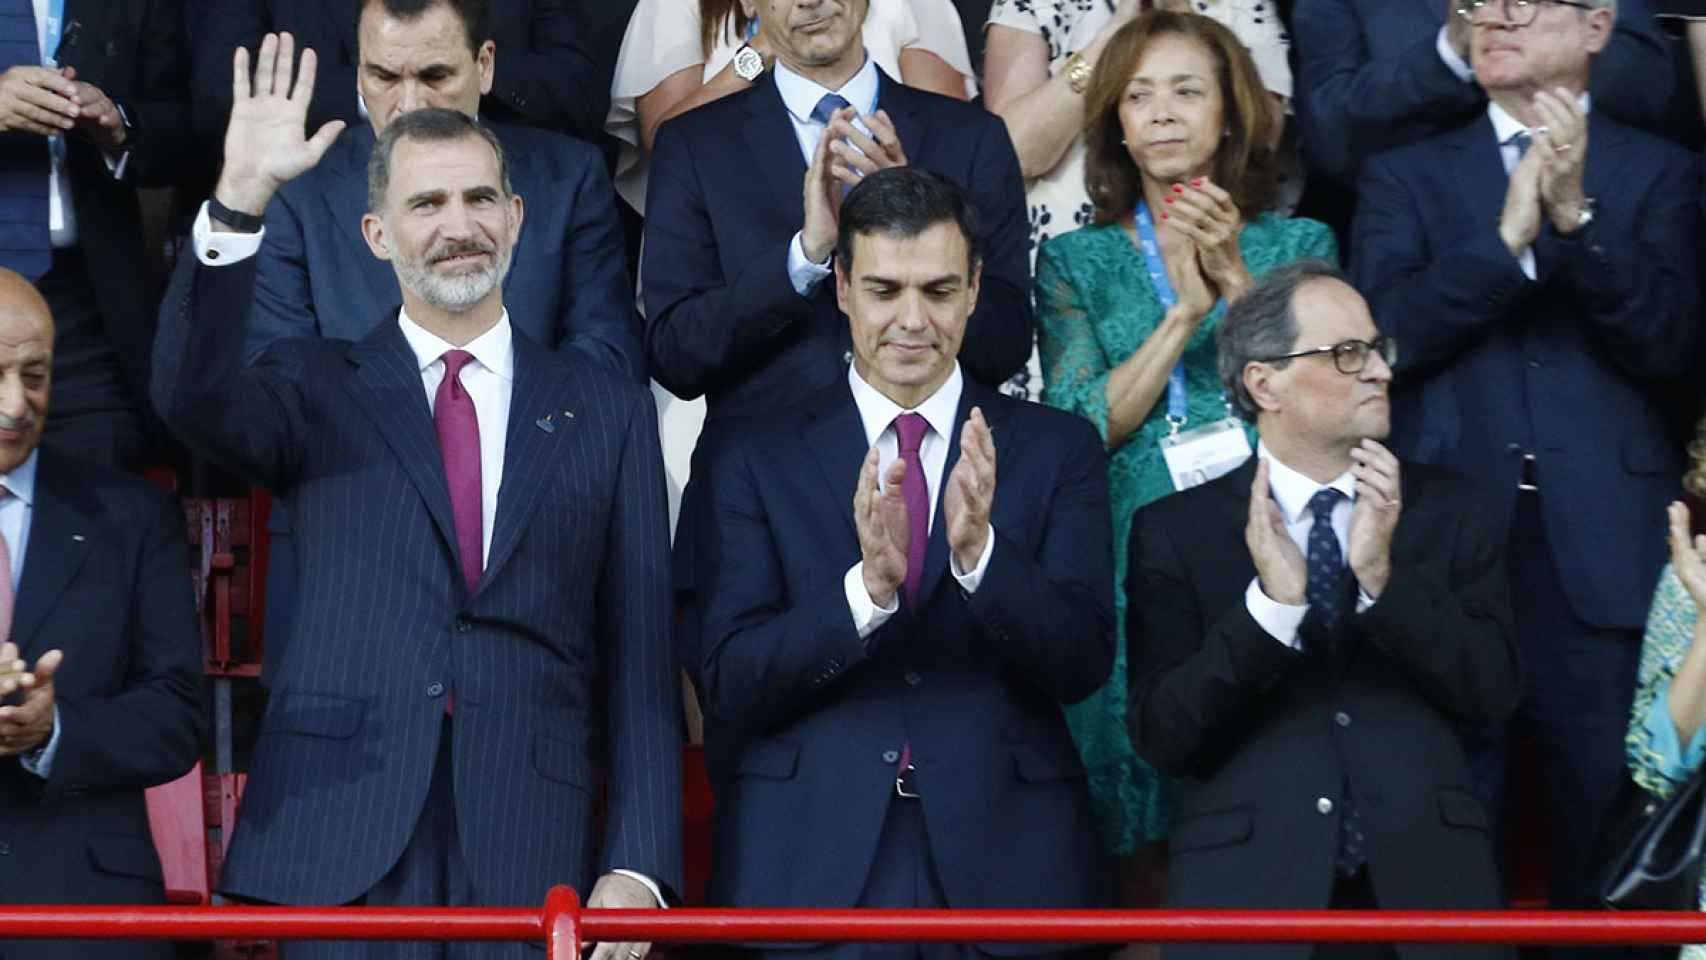 Felipe VI, Pedro Sánchez y Quim Torra, en la inauguración de los XVIII Juegos Mediterráneos, en Tarragona.